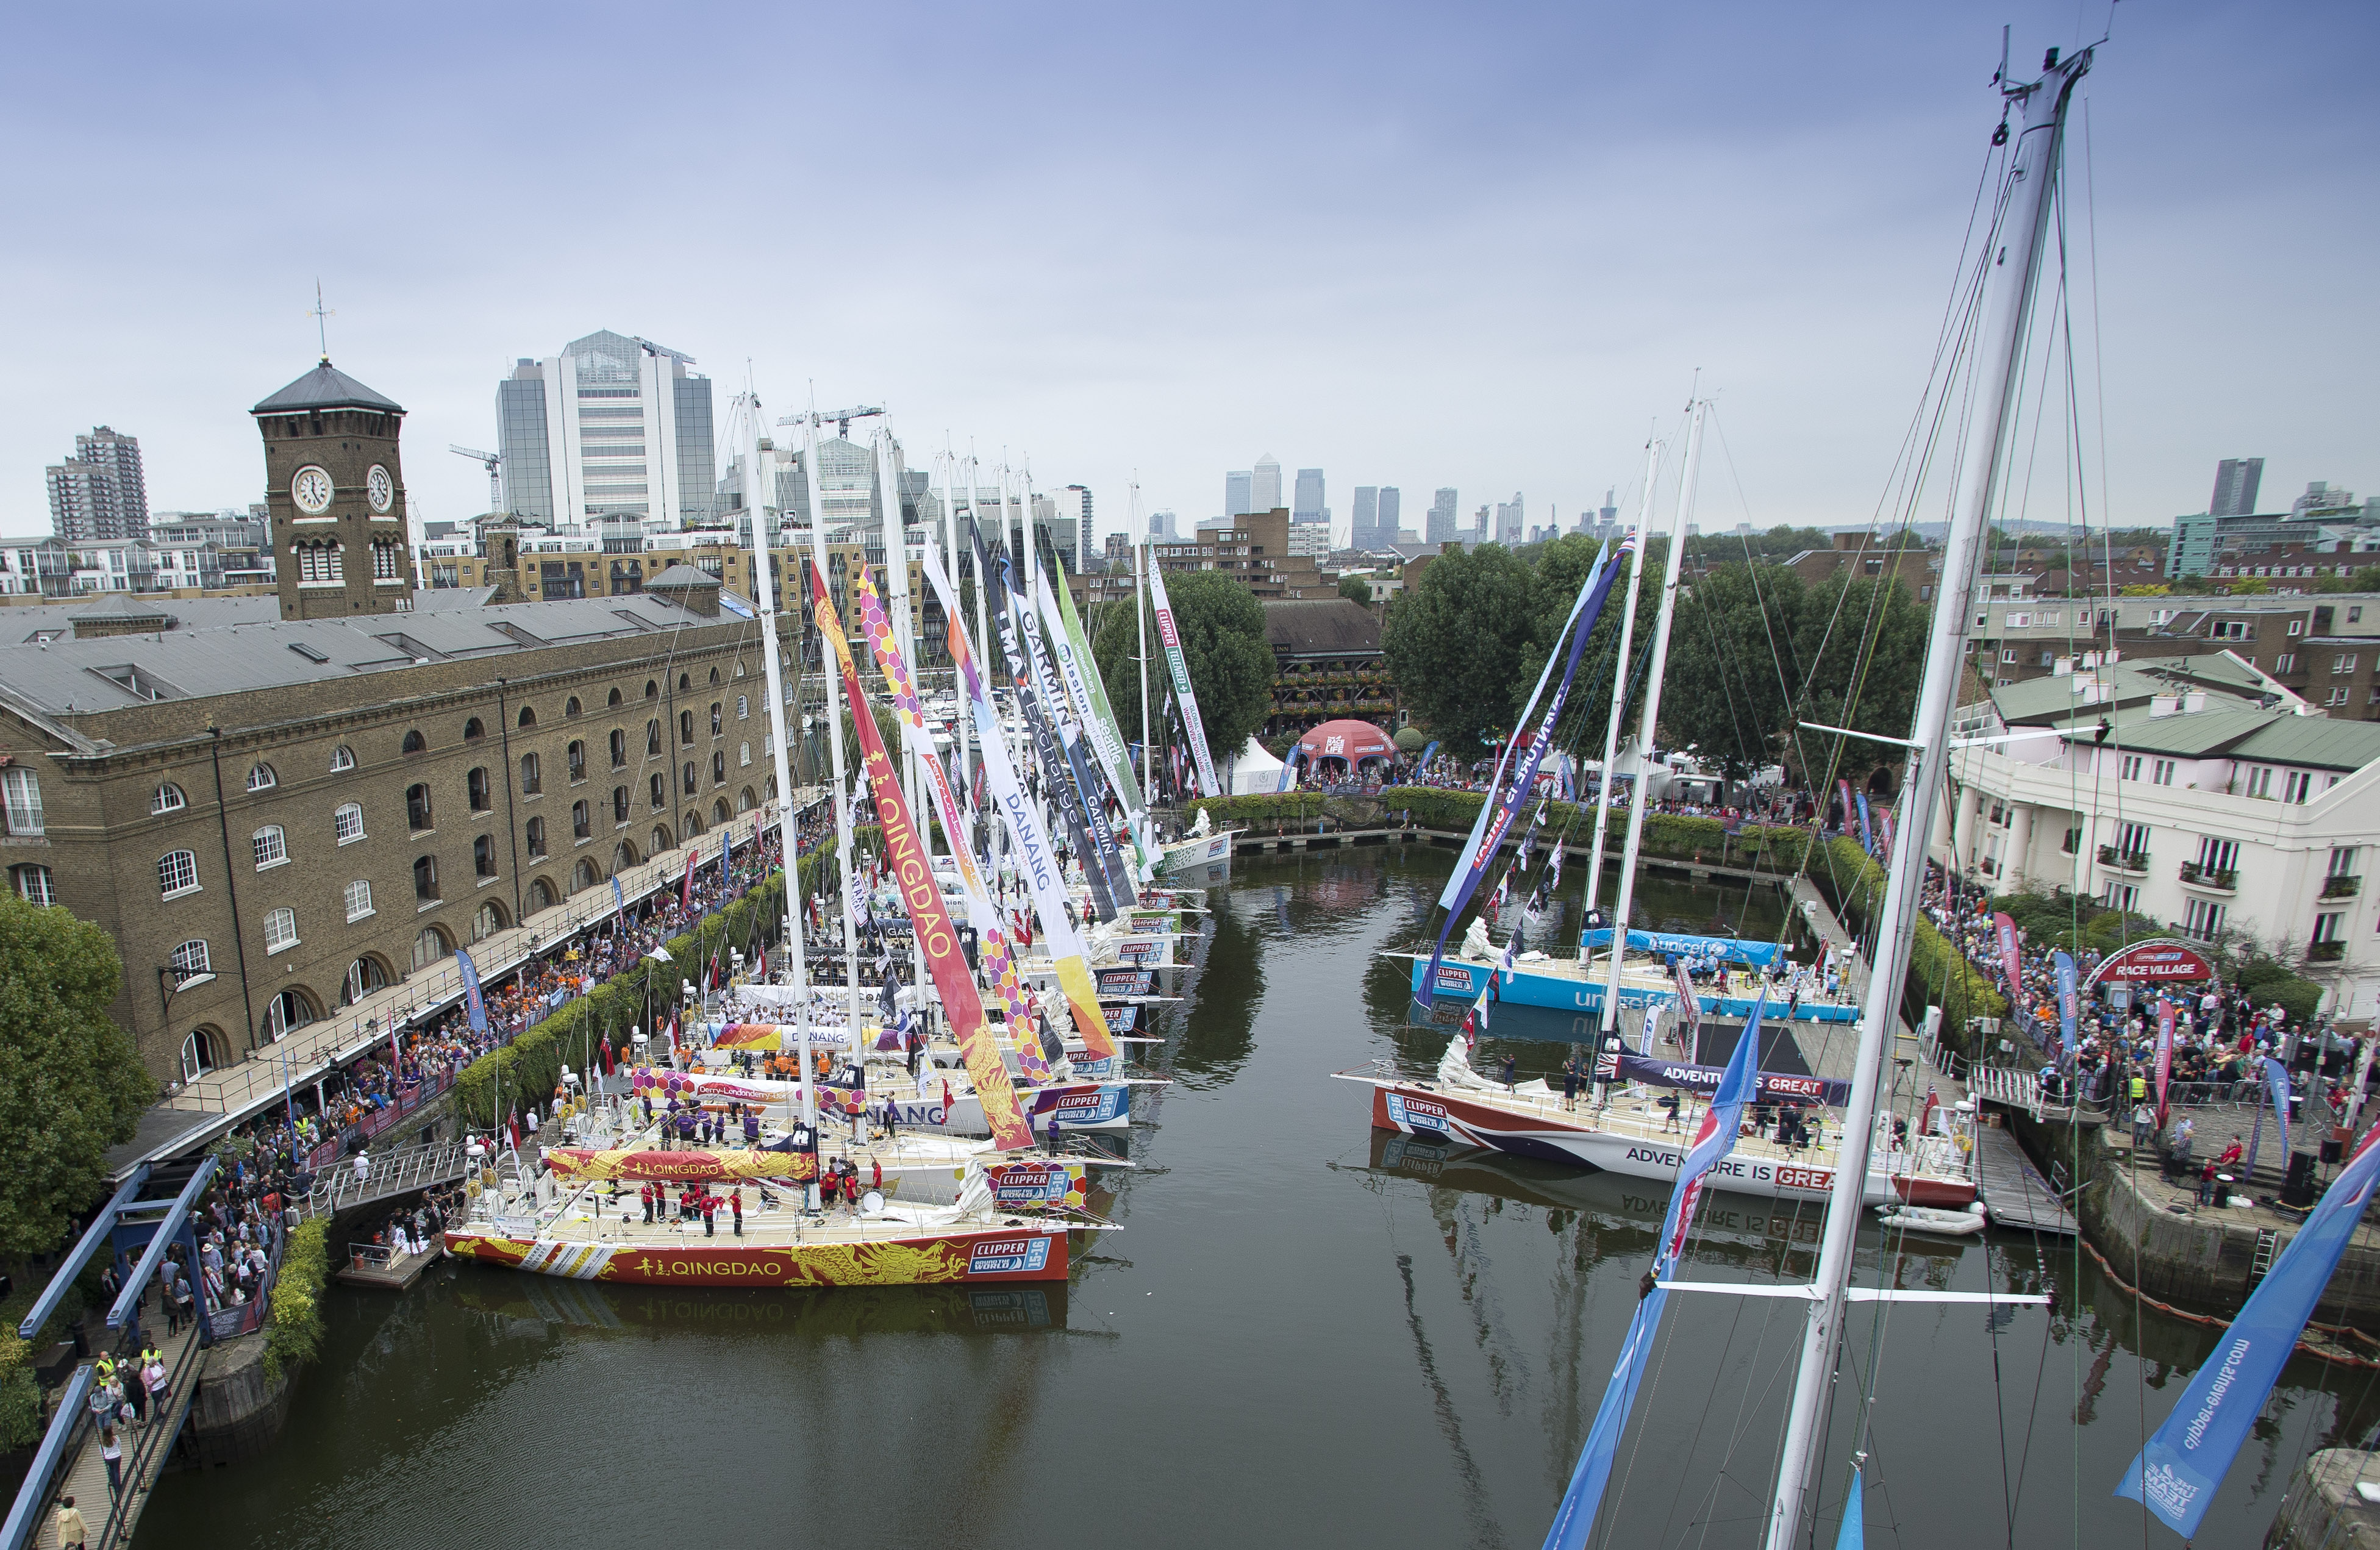 London’s St.Katharine Docks confirmed as Race Start Partner for Clipper 2019-20 Race